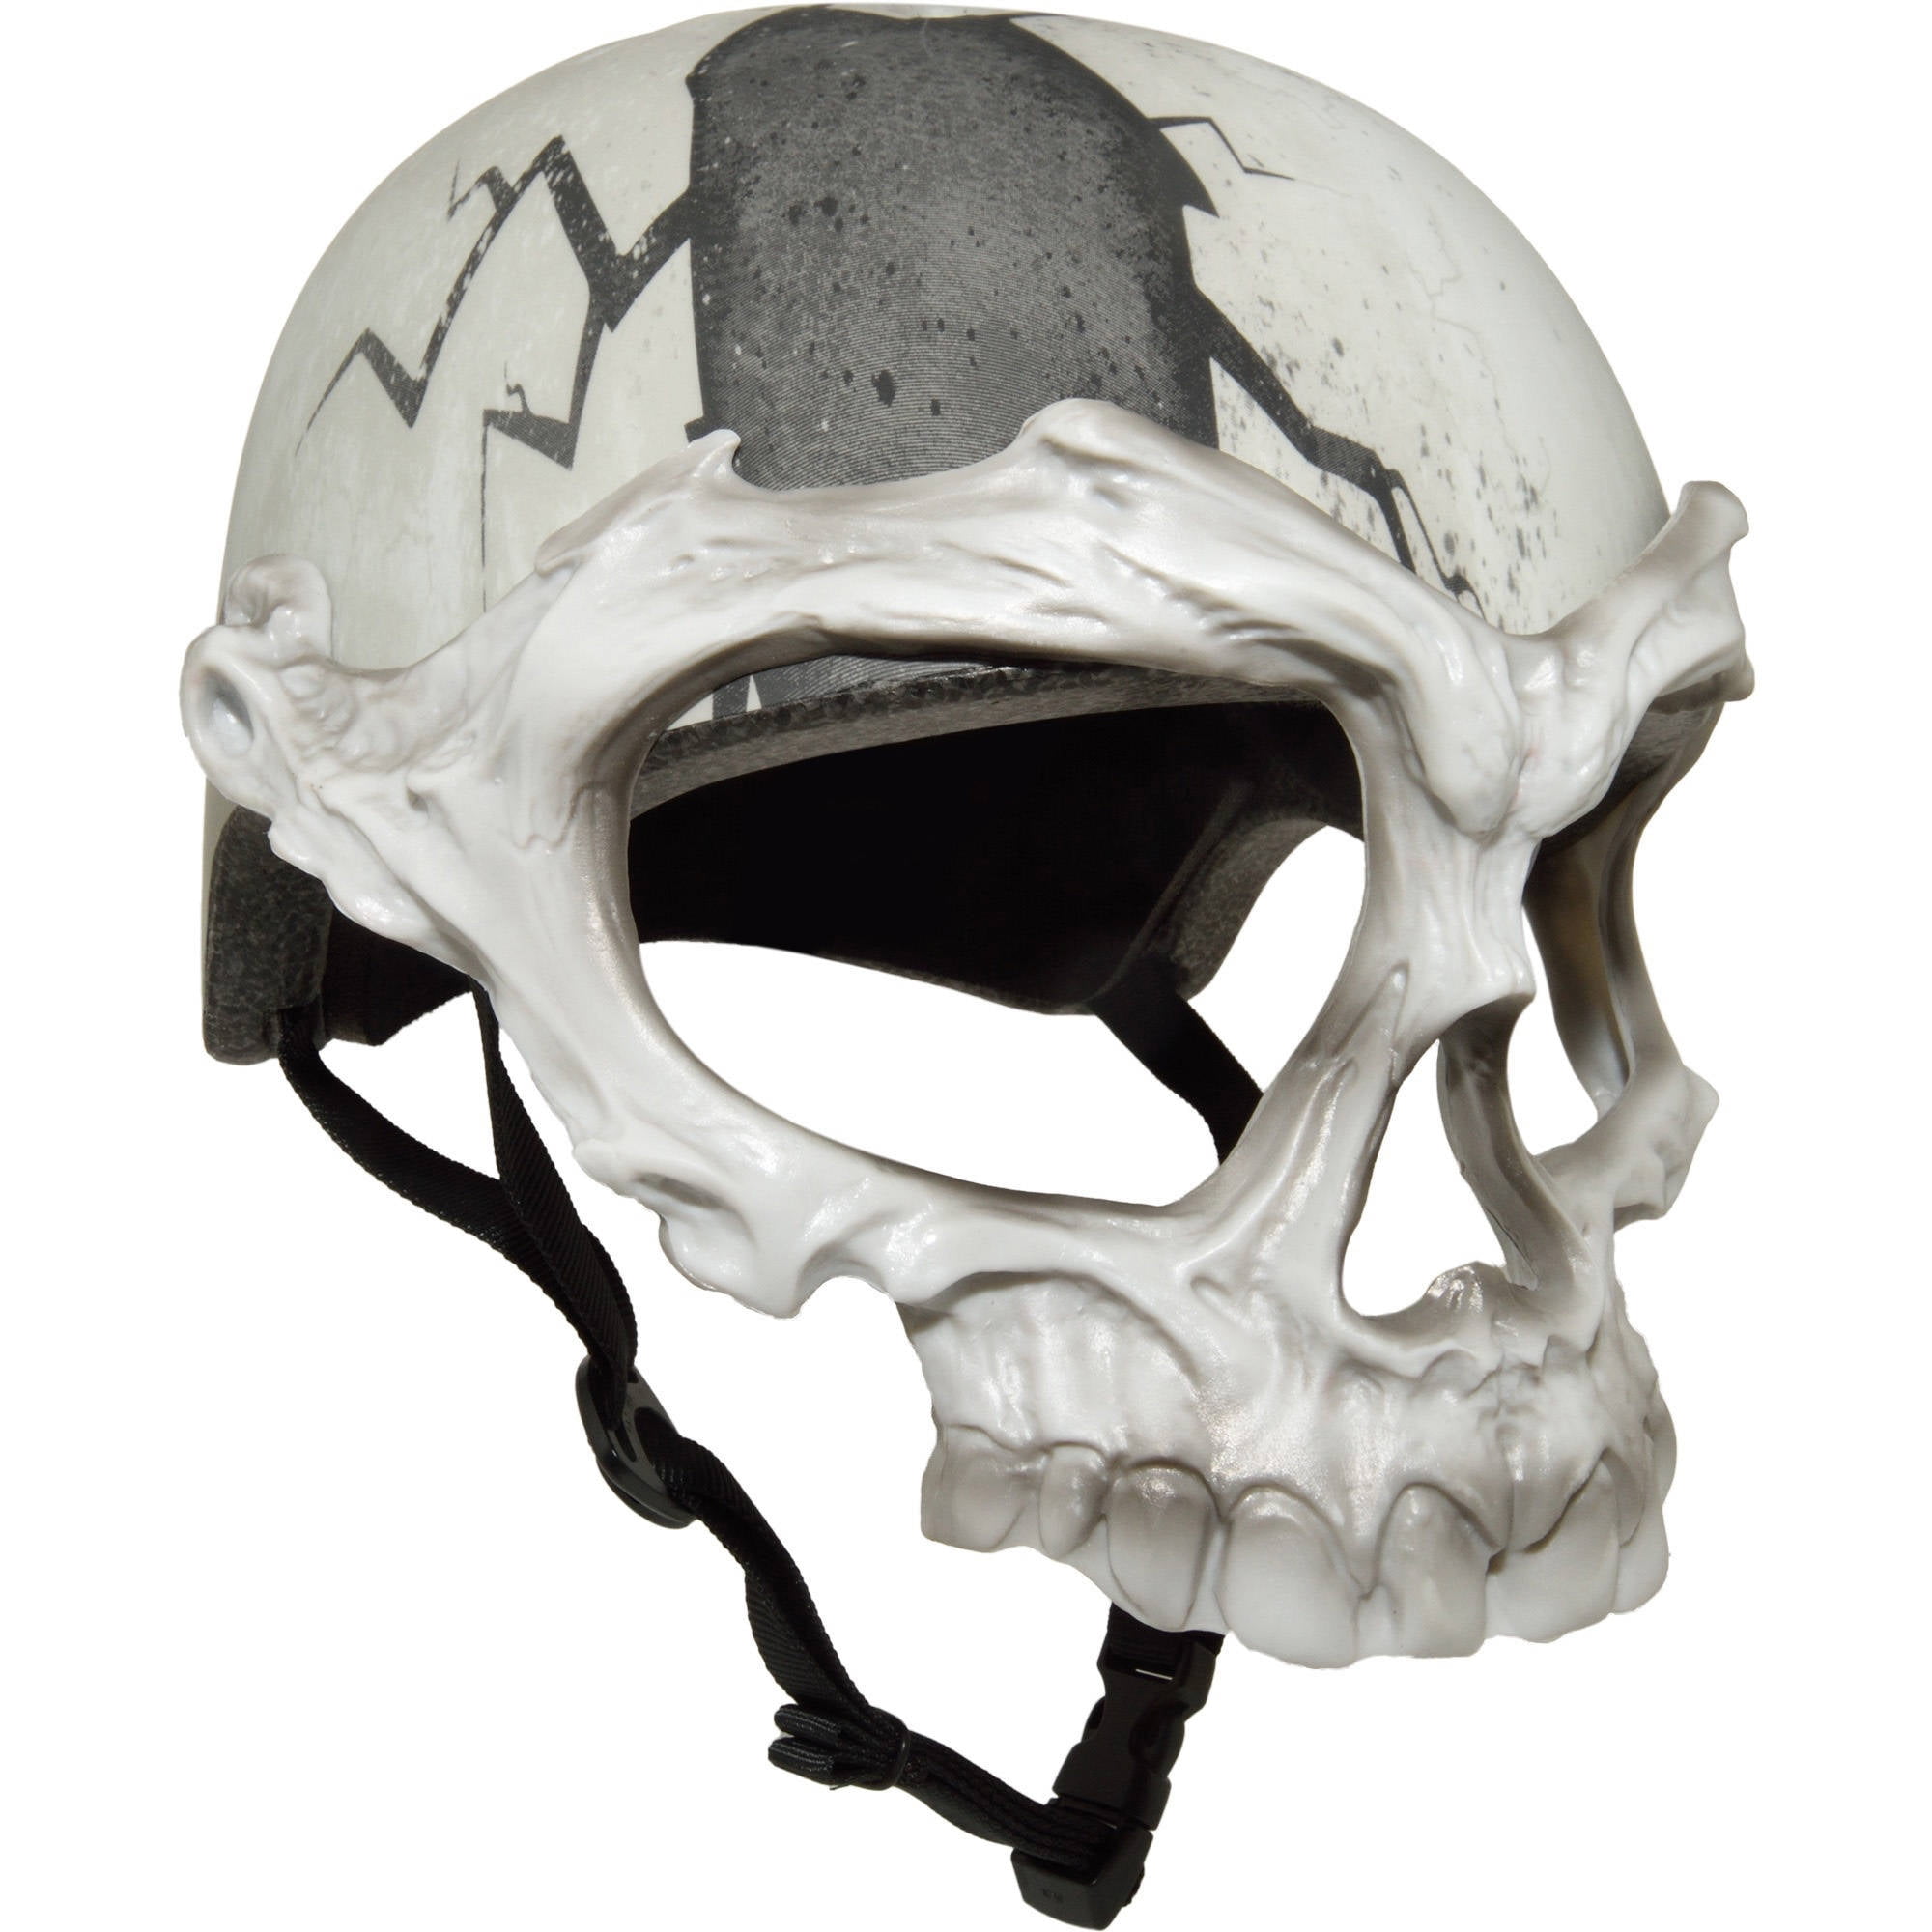 skull helmet for bike